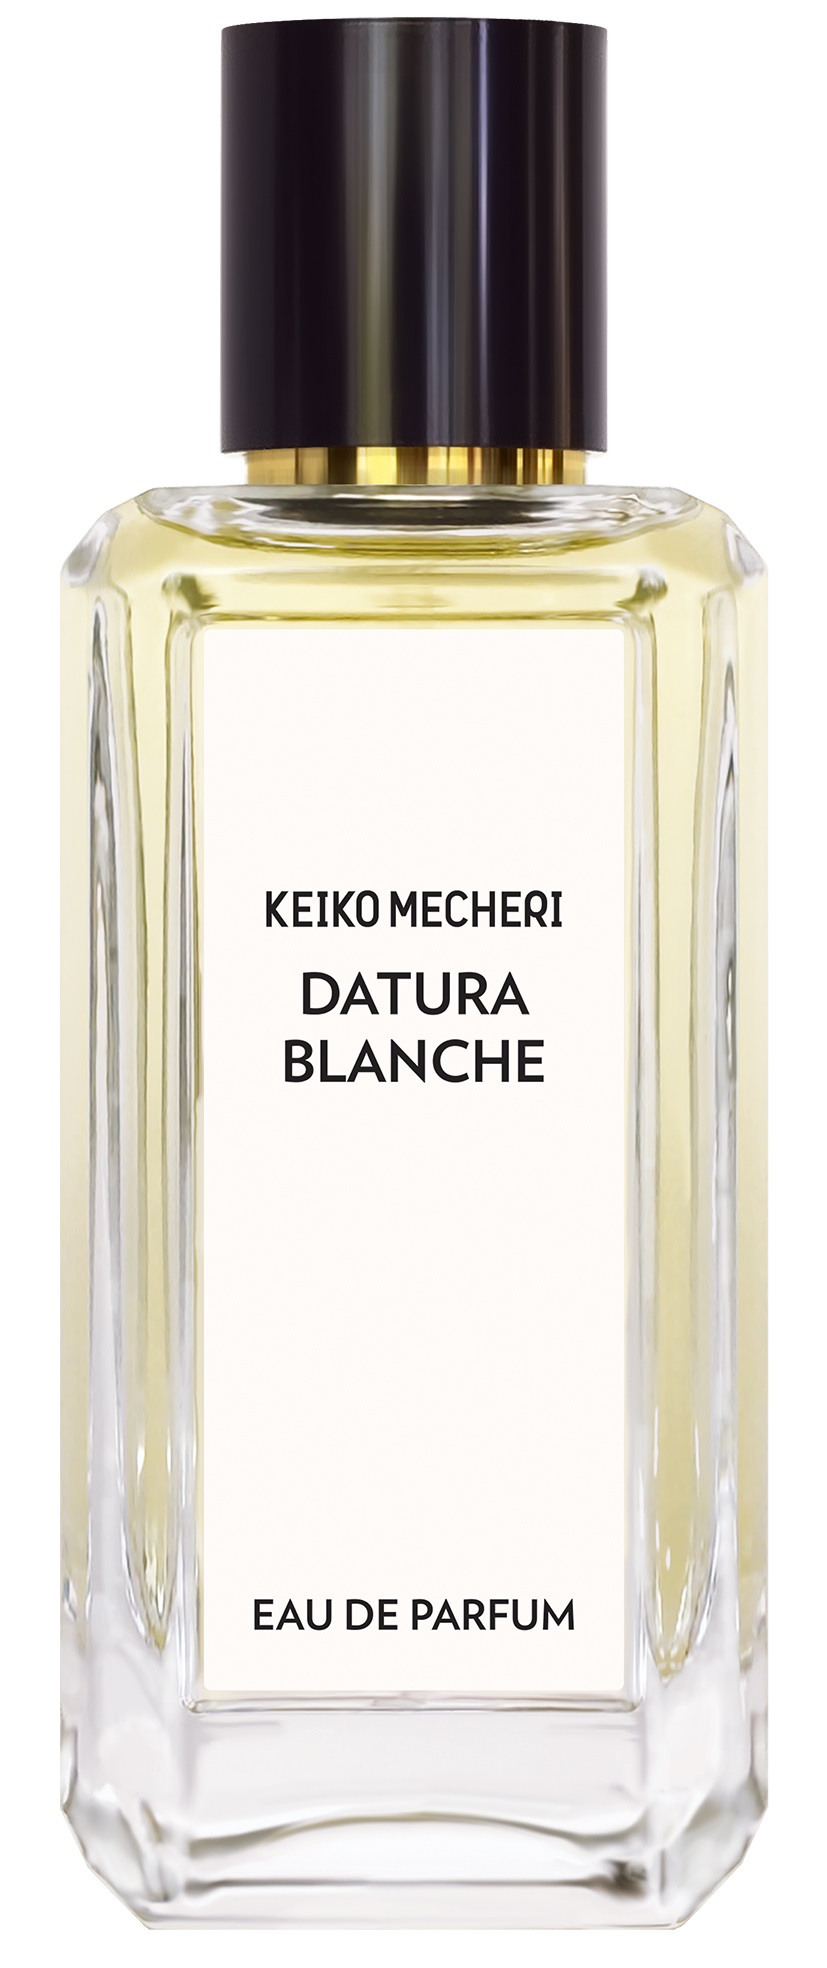 Keiko Mecheri Datura Blanche edp 100 ml.